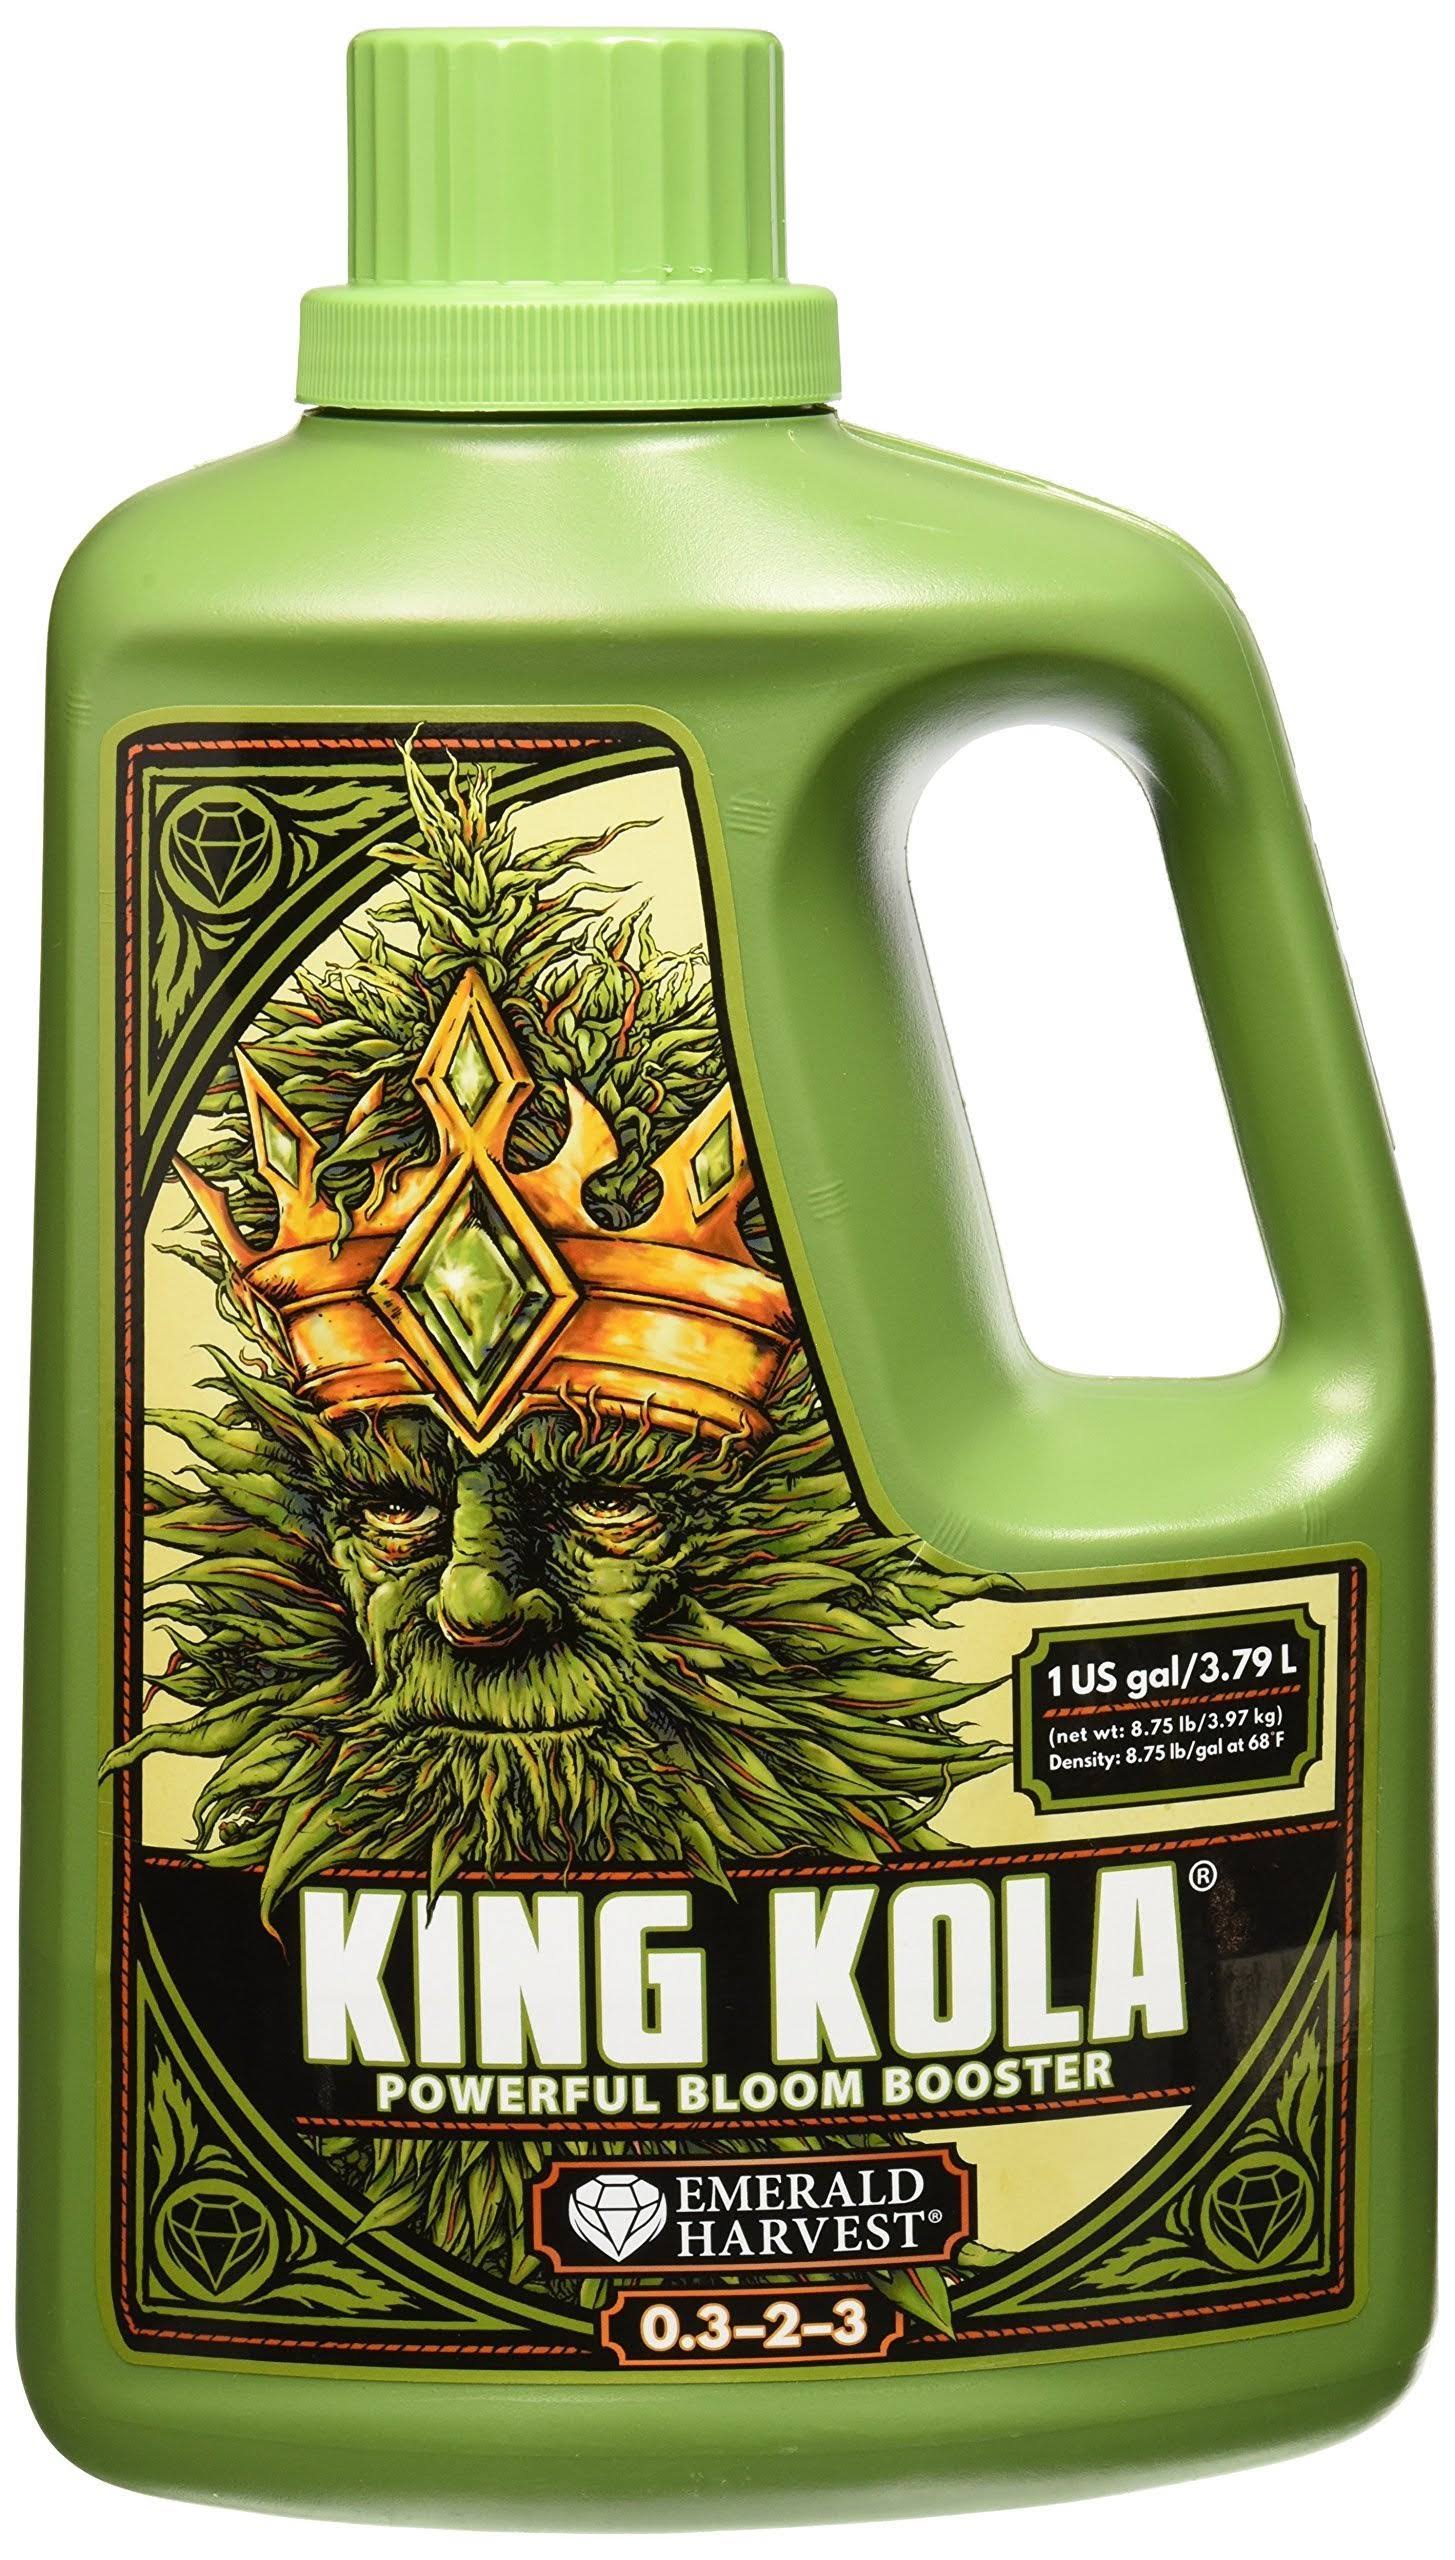 Emerald Harvest King Kola Bloom Booster - 3.8L